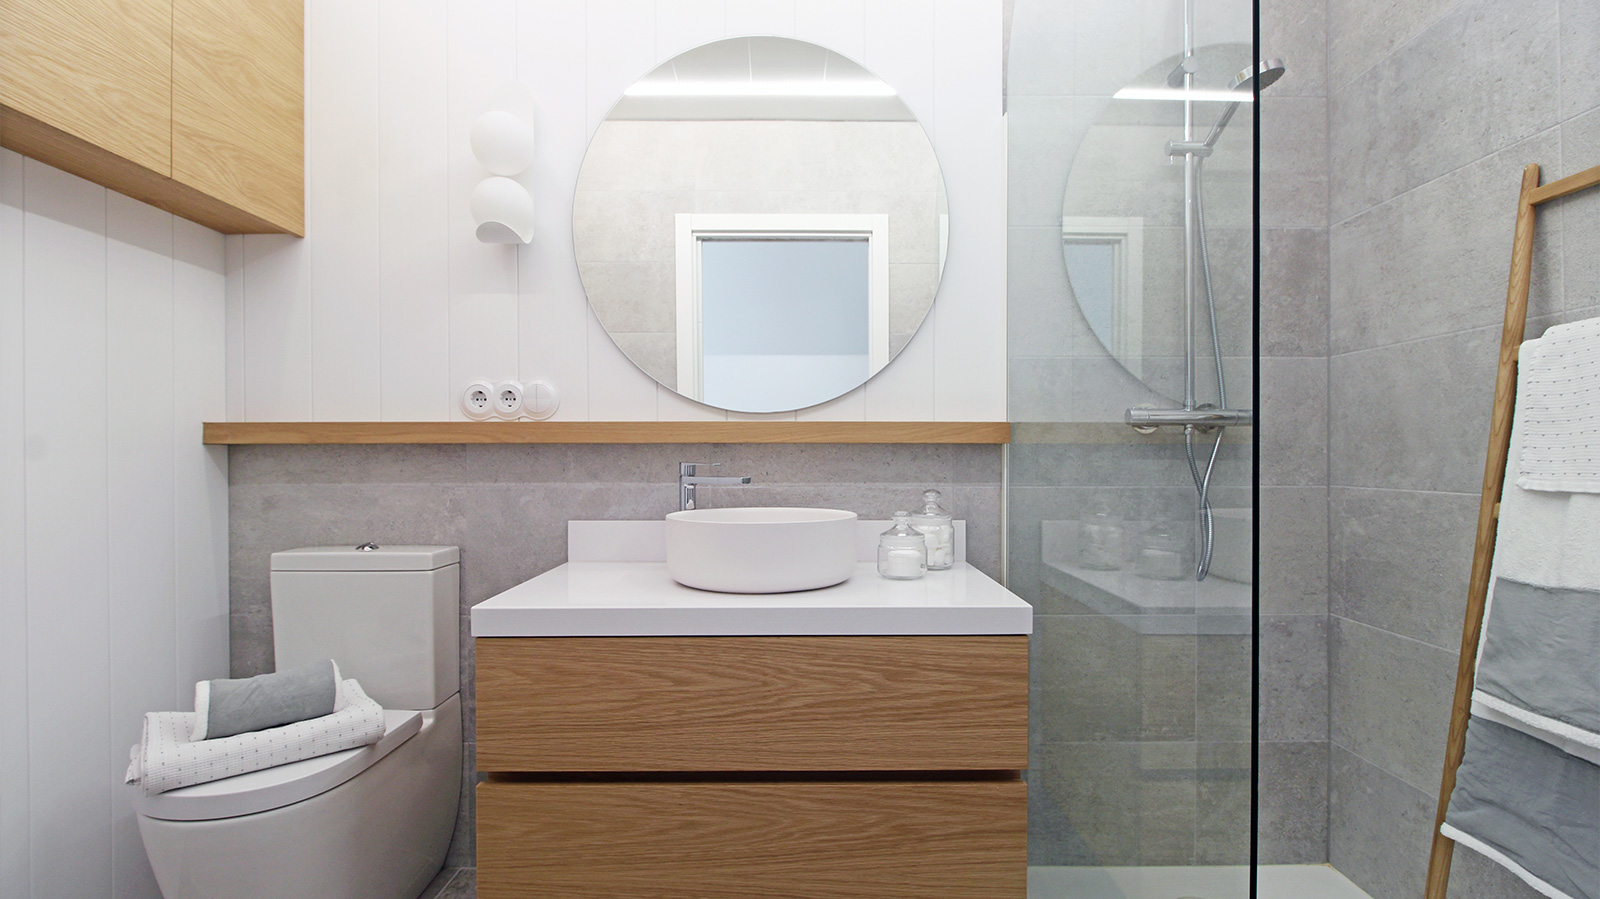 baño completo con ducha moderna, en tonos madera y blanco